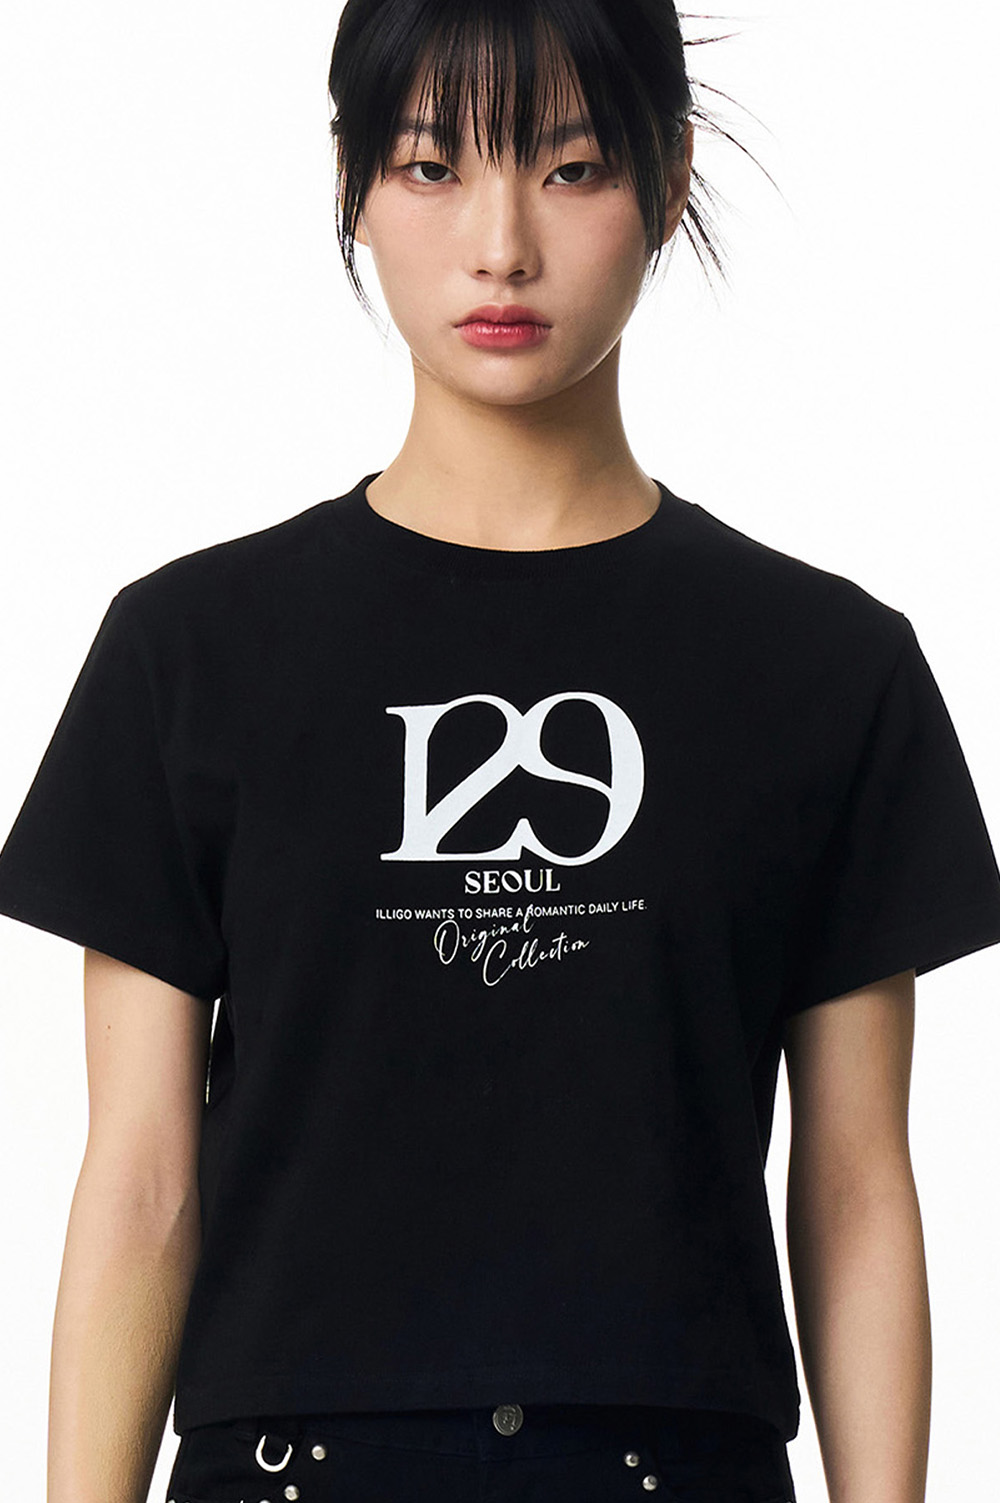 129 루즈 세미 크롭 티셔츠 블랙